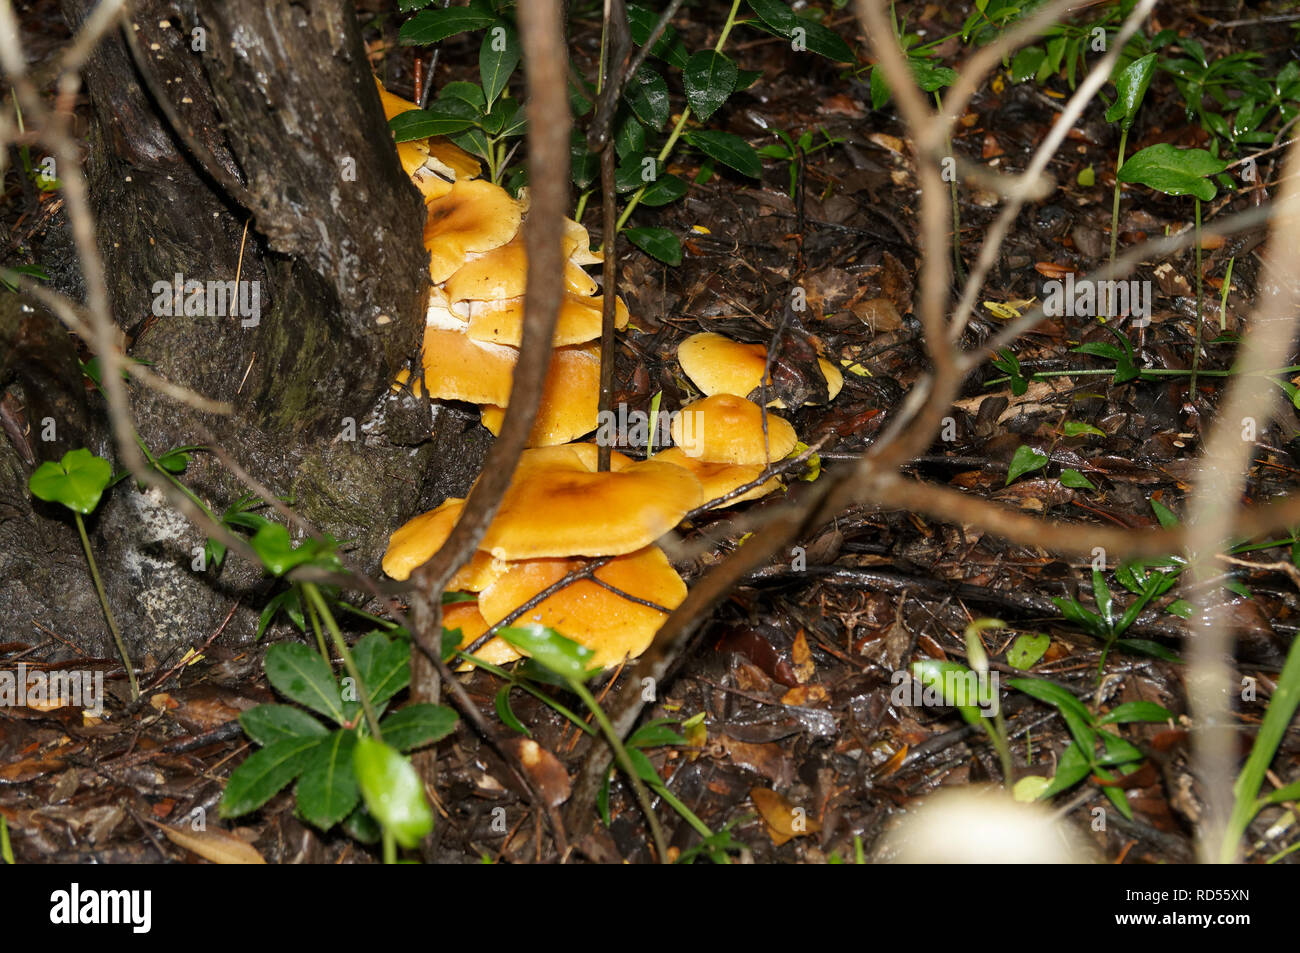 Close up of Omphalotus olearius, connu sous le nom de jack-o'-lantern, champignons vénéneux est un champignon orange. Sud de la France, Var. Banque D'Images